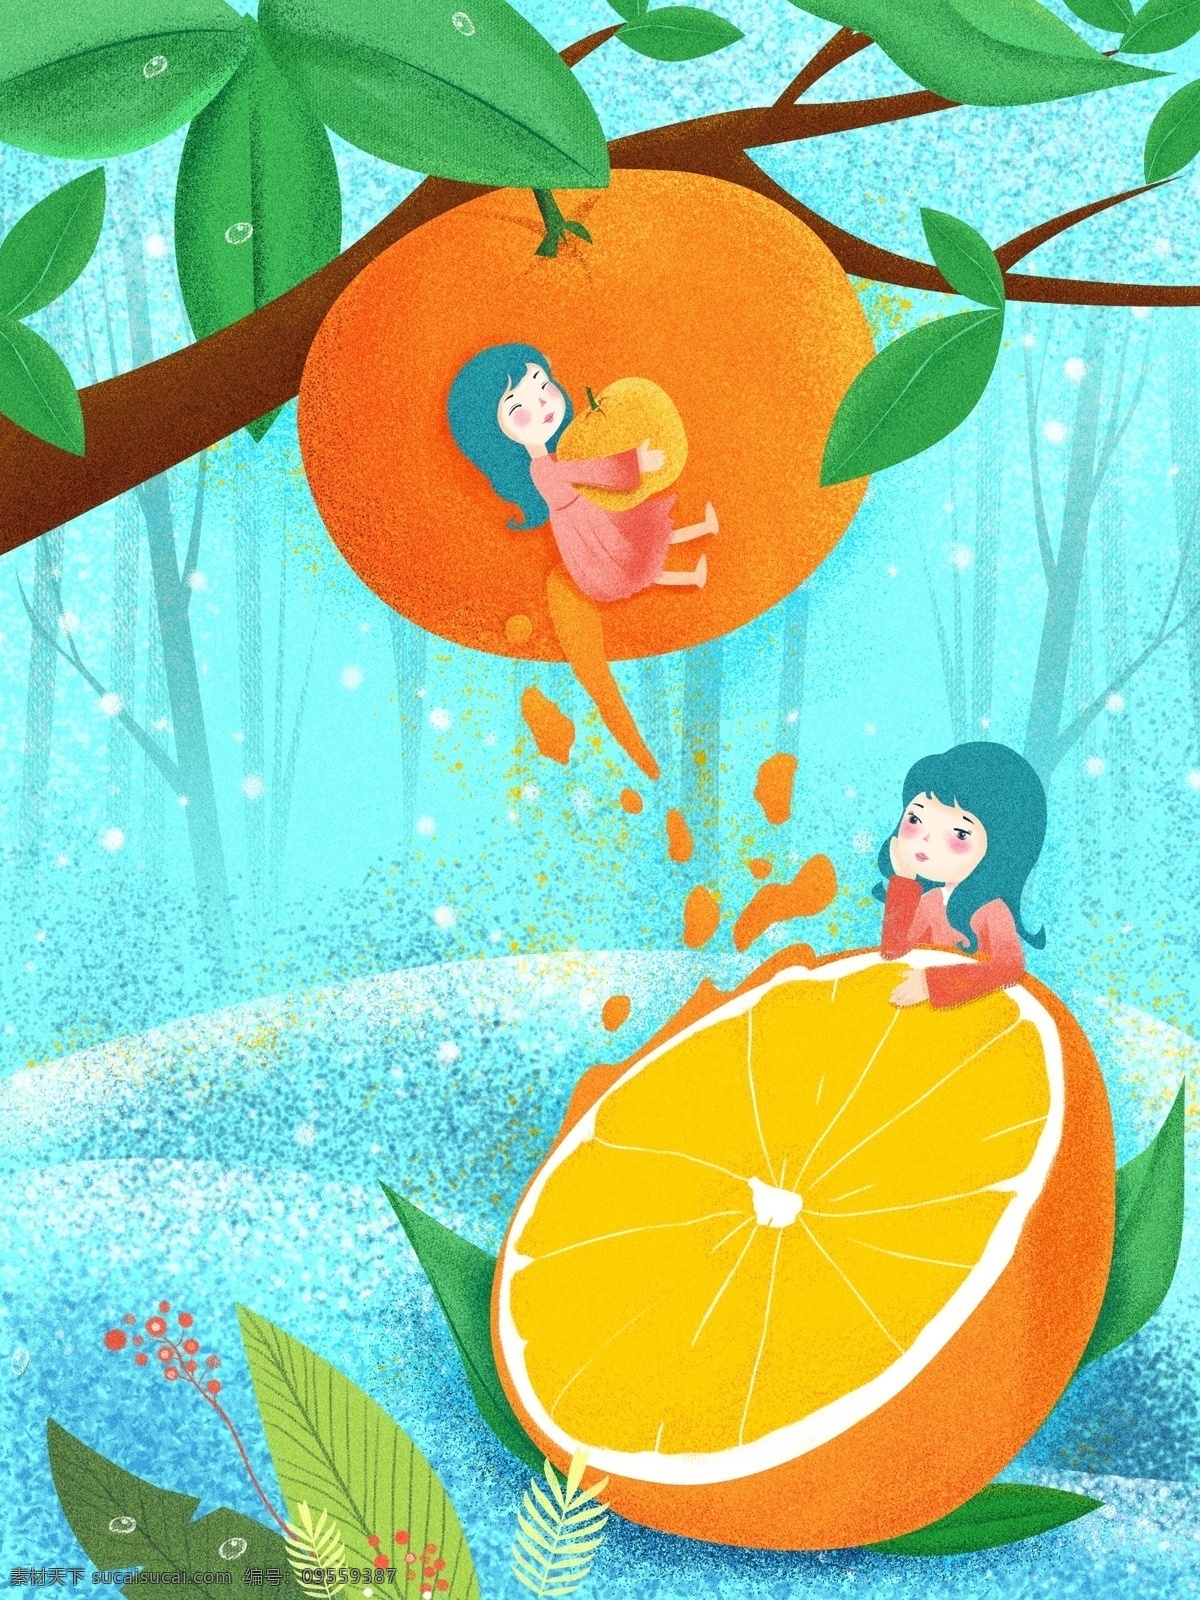 噪 点 肌理 创意 水果 插画 橙子 爱恋 创意水果 小清新 甜橙 女孩儿 爱 吃 女孩 噪点插画